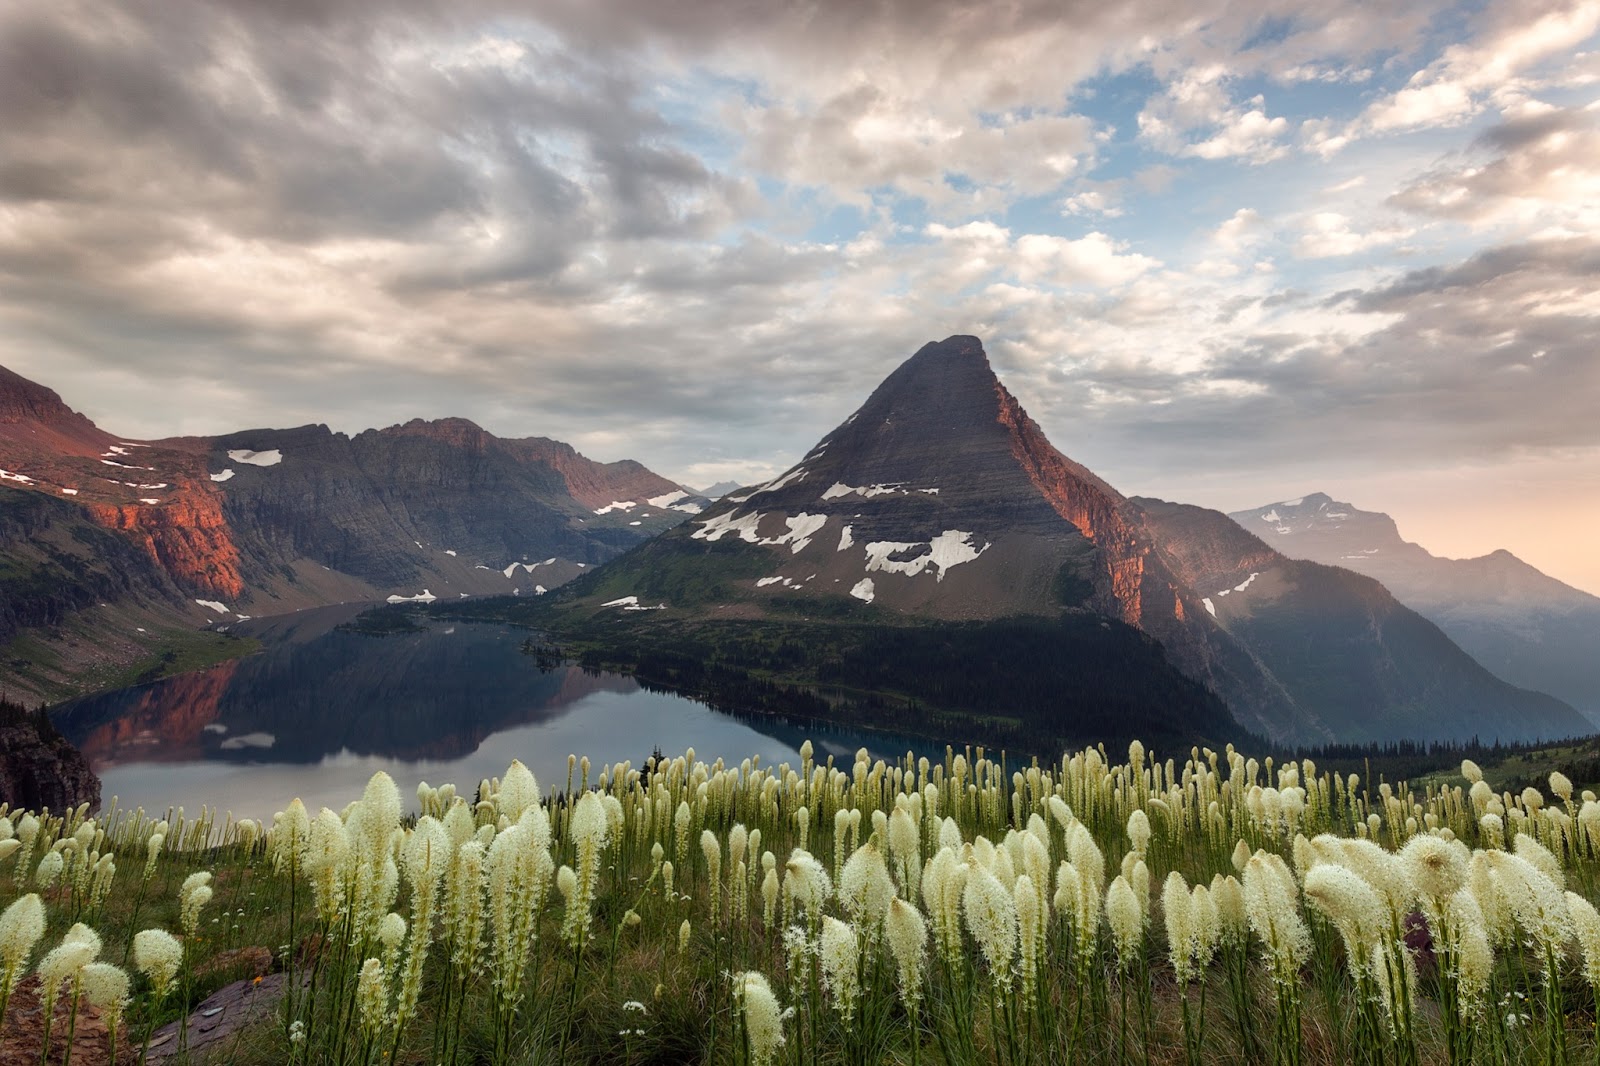 iconic mountain scene in glacier national park